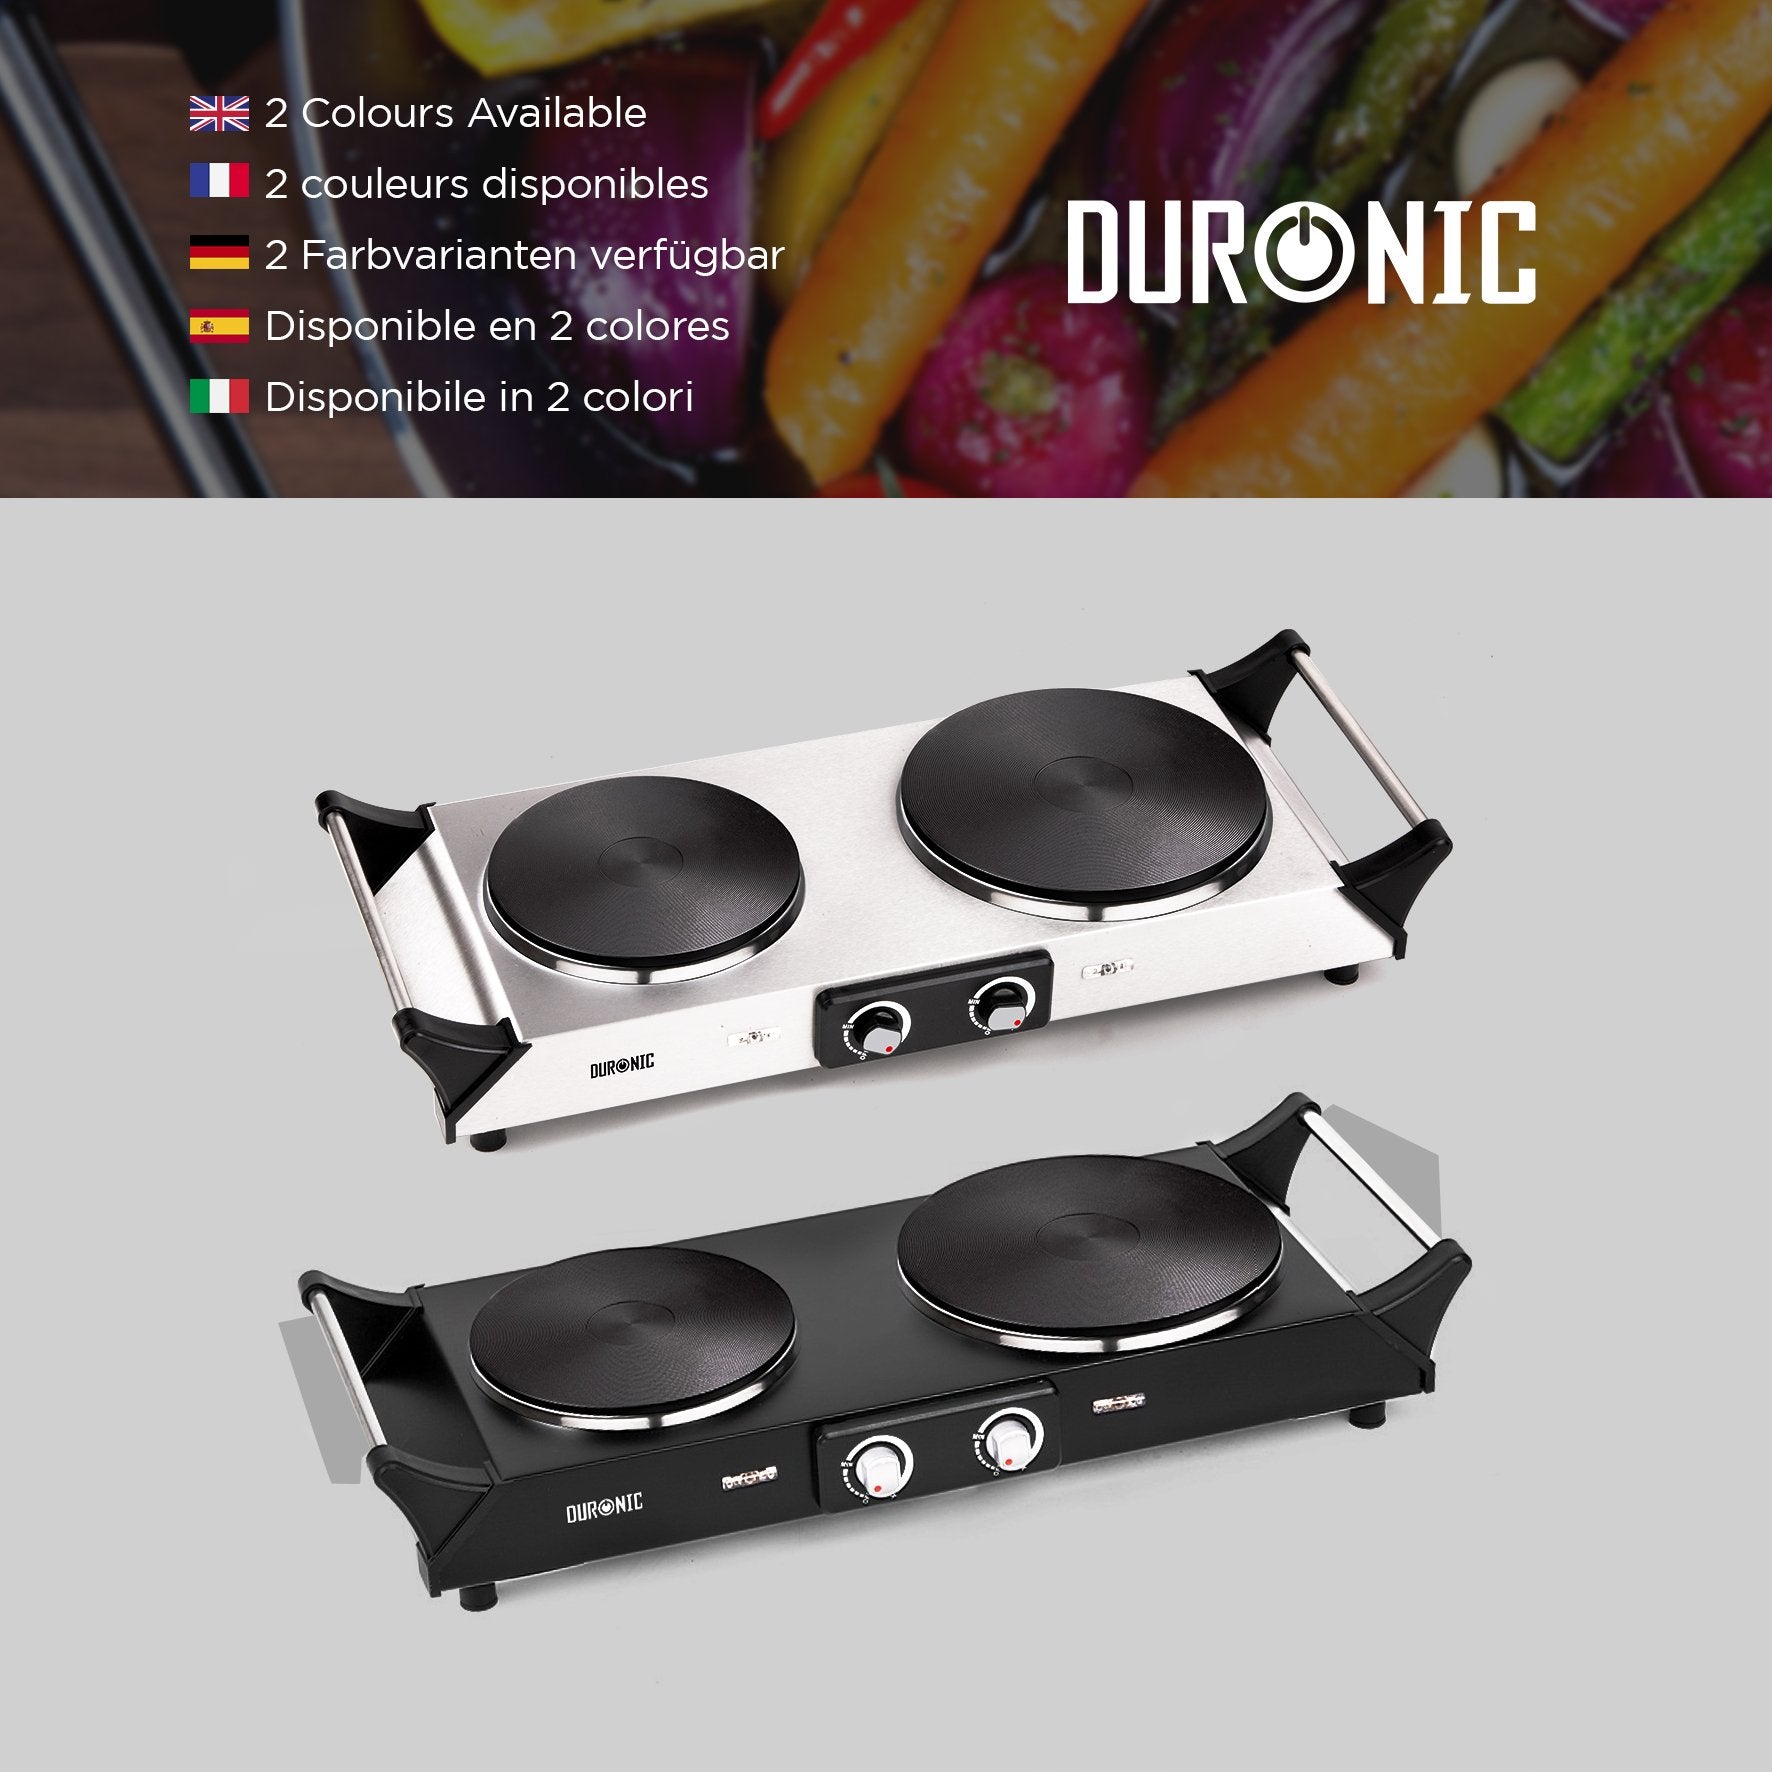 Duronic HP2 BK Plaque de cuisson chauffante électrique avec double foyer en fonte de 20 et 15 cm| 2500W | Compacte et mobile | Poignées ergonomiques | Thermostat | Camping, Camping-car, caravane